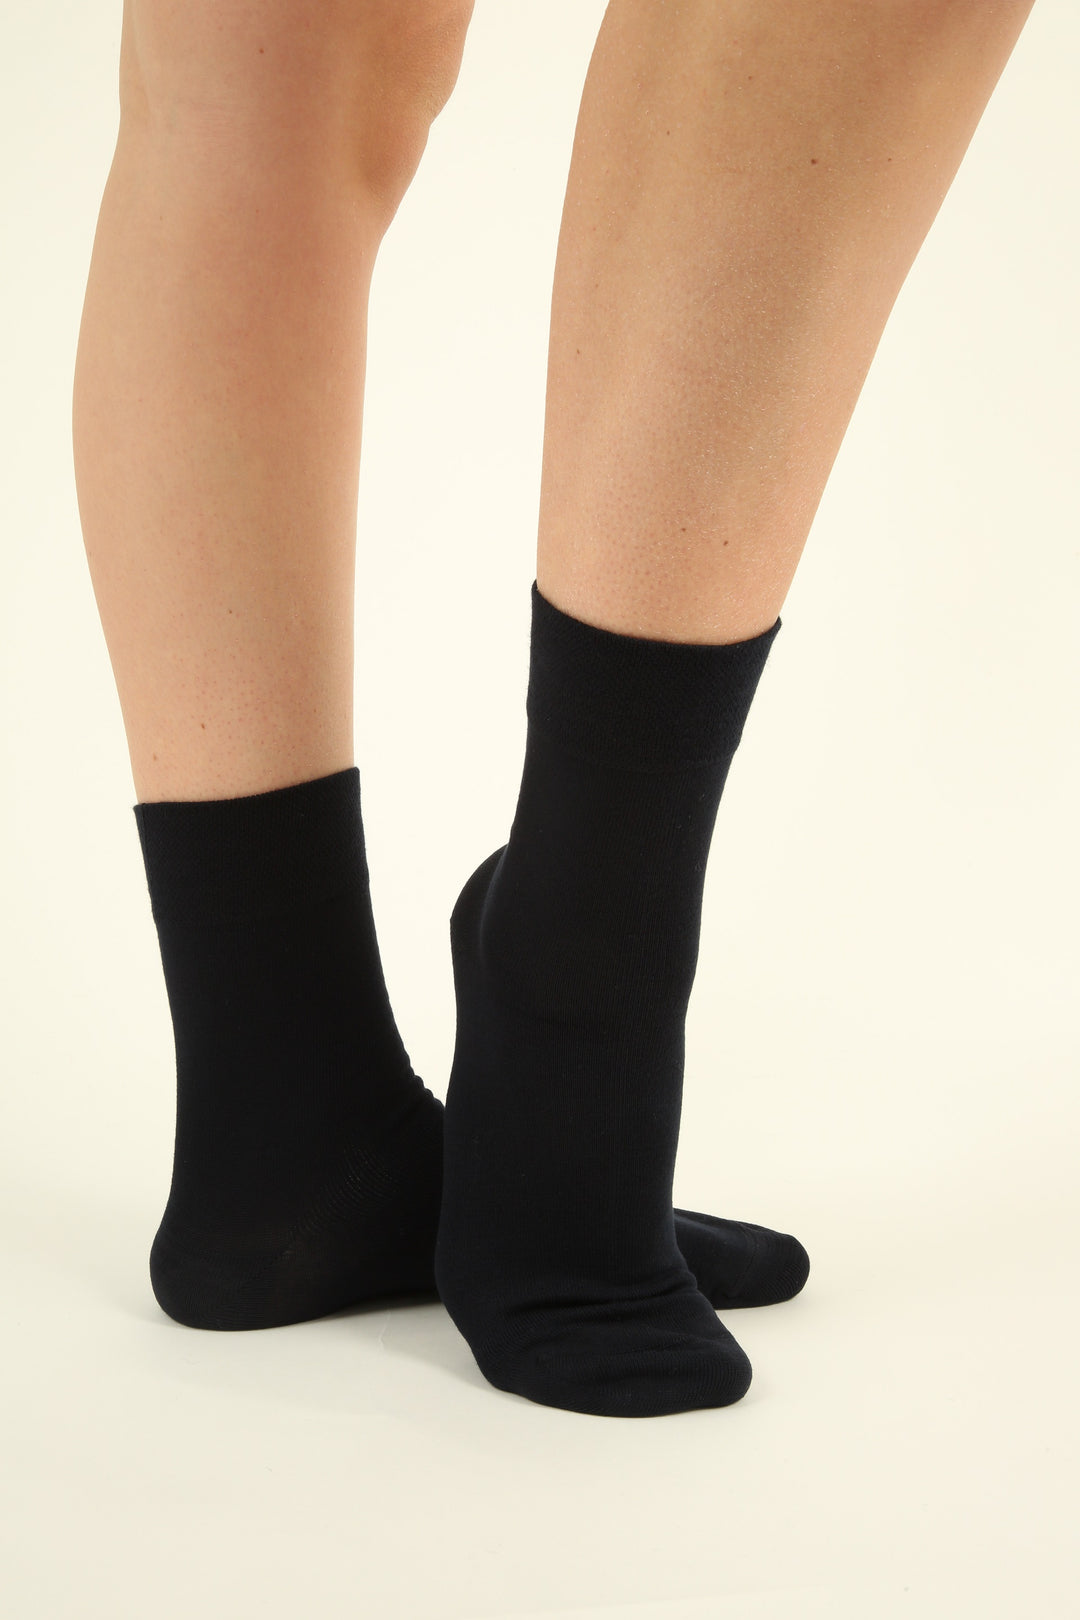 10 paires de chaussettes enfant Basic - Sans couture - Zwart